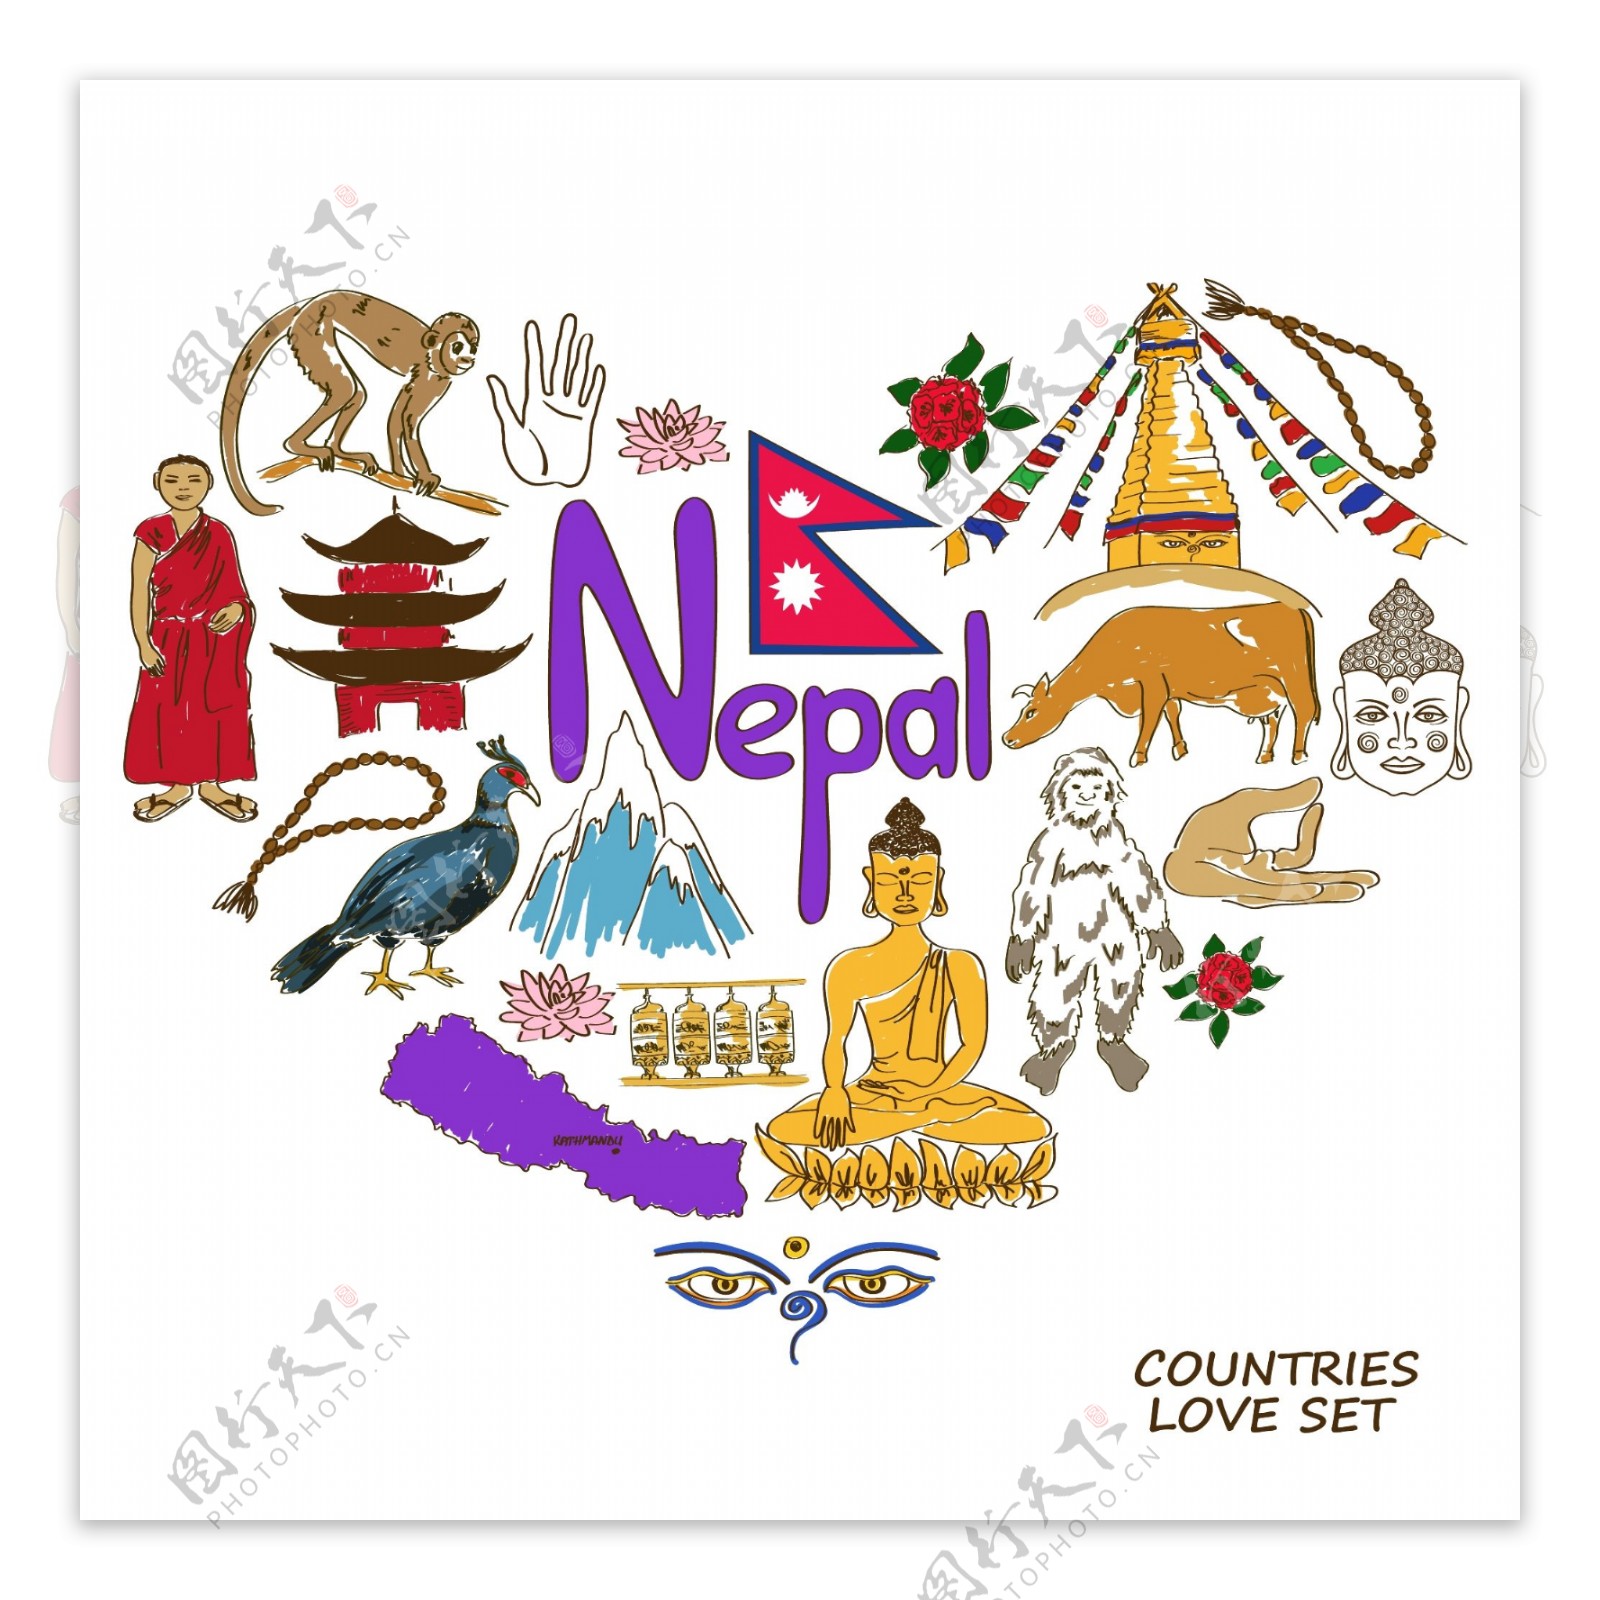 尼泊尔国家元素